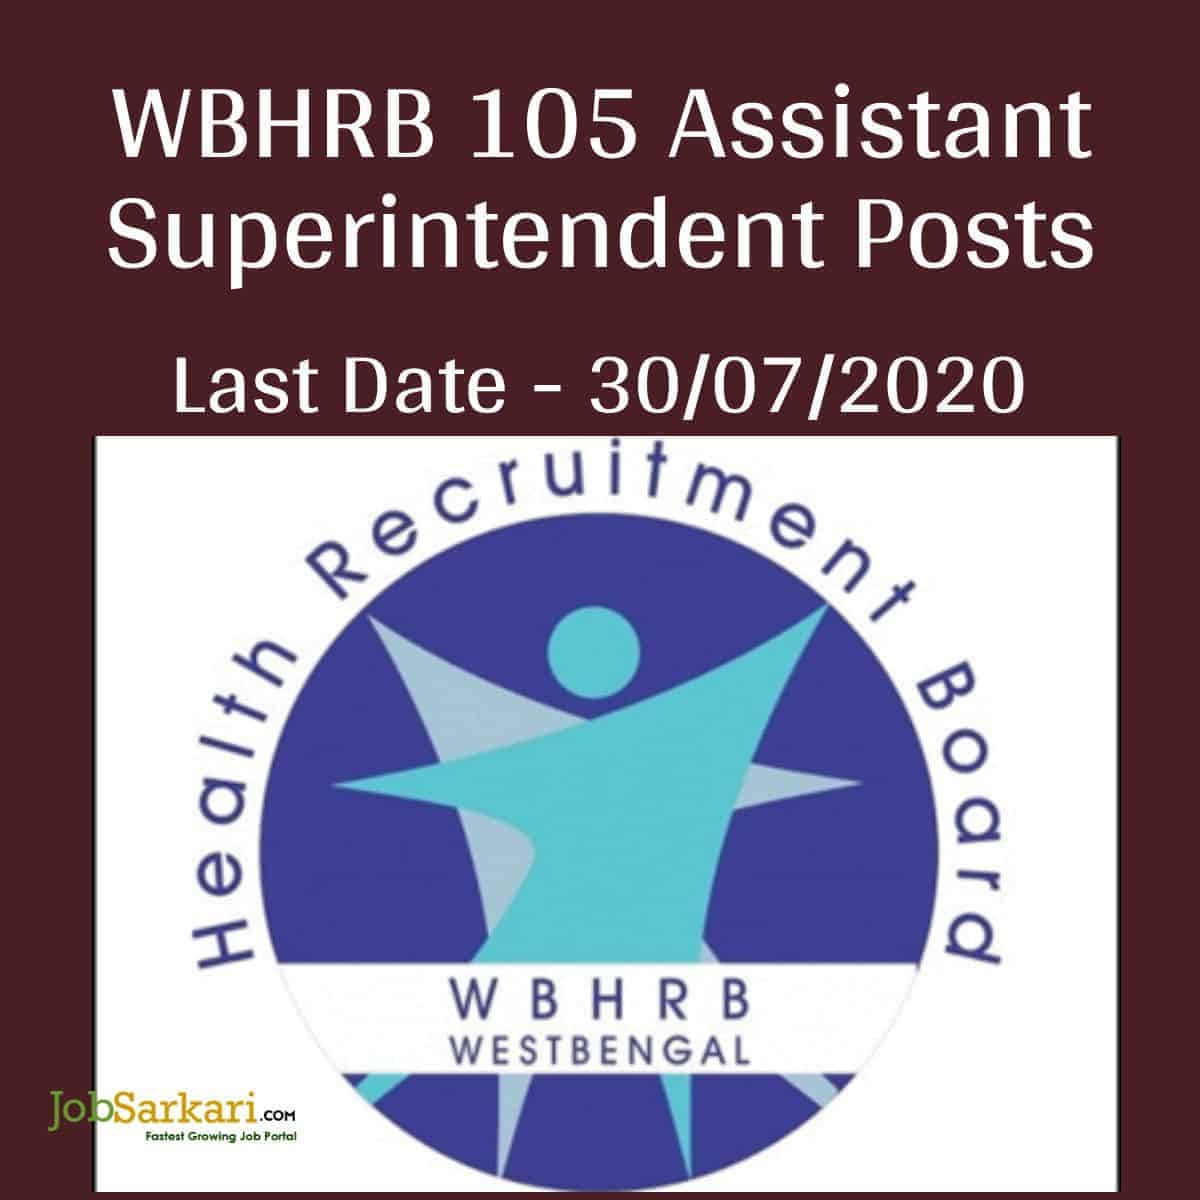 WBHRB 105 Assistant Superintendent Posts